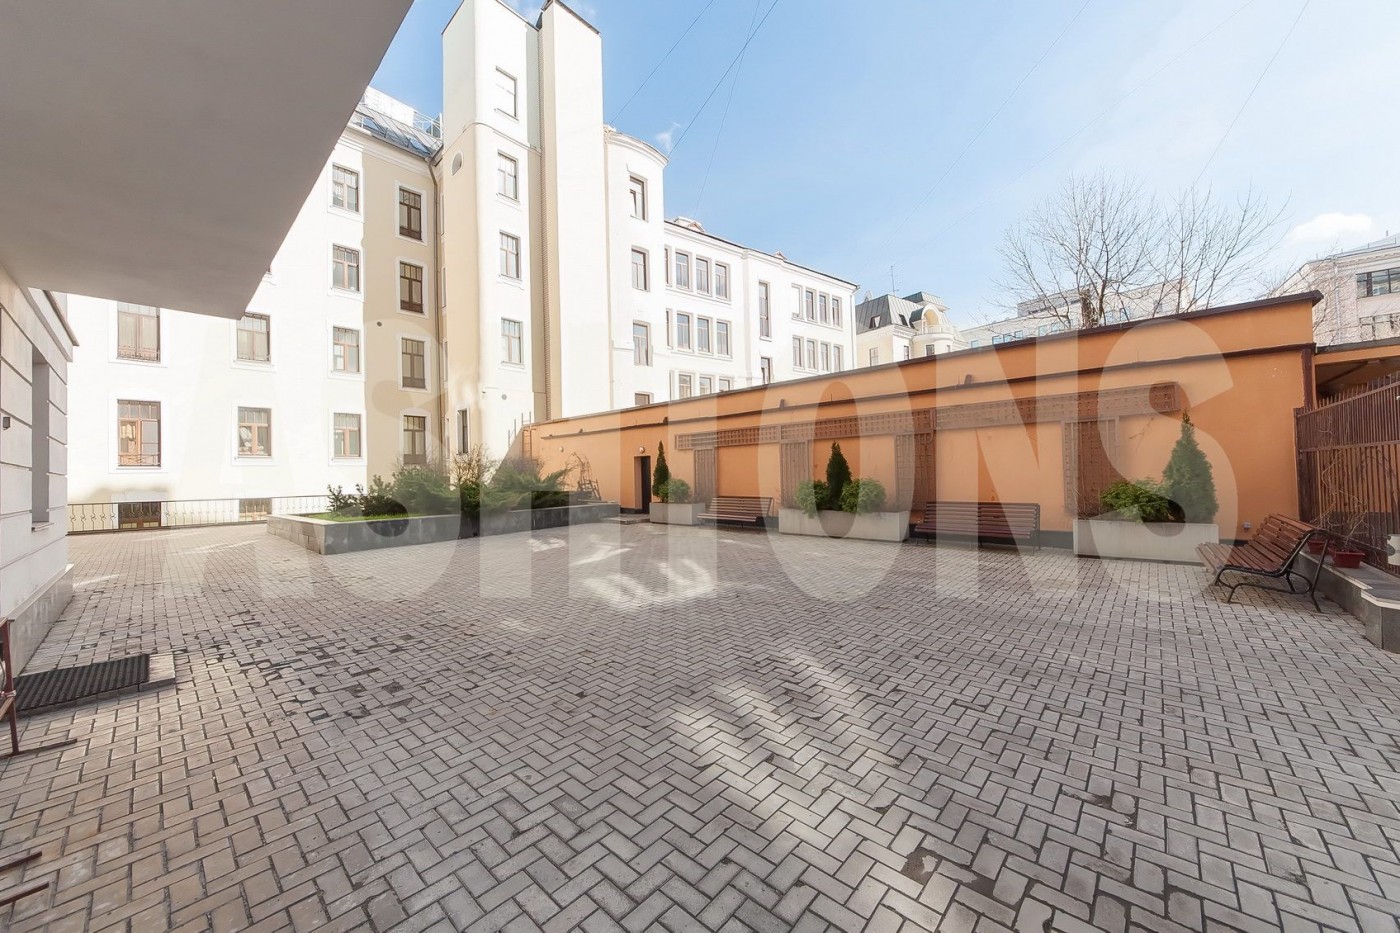 Elite apartment for rent on Plotnikov Lane, building 21c1 by ASHTONS INTERNATIONAL REALTY